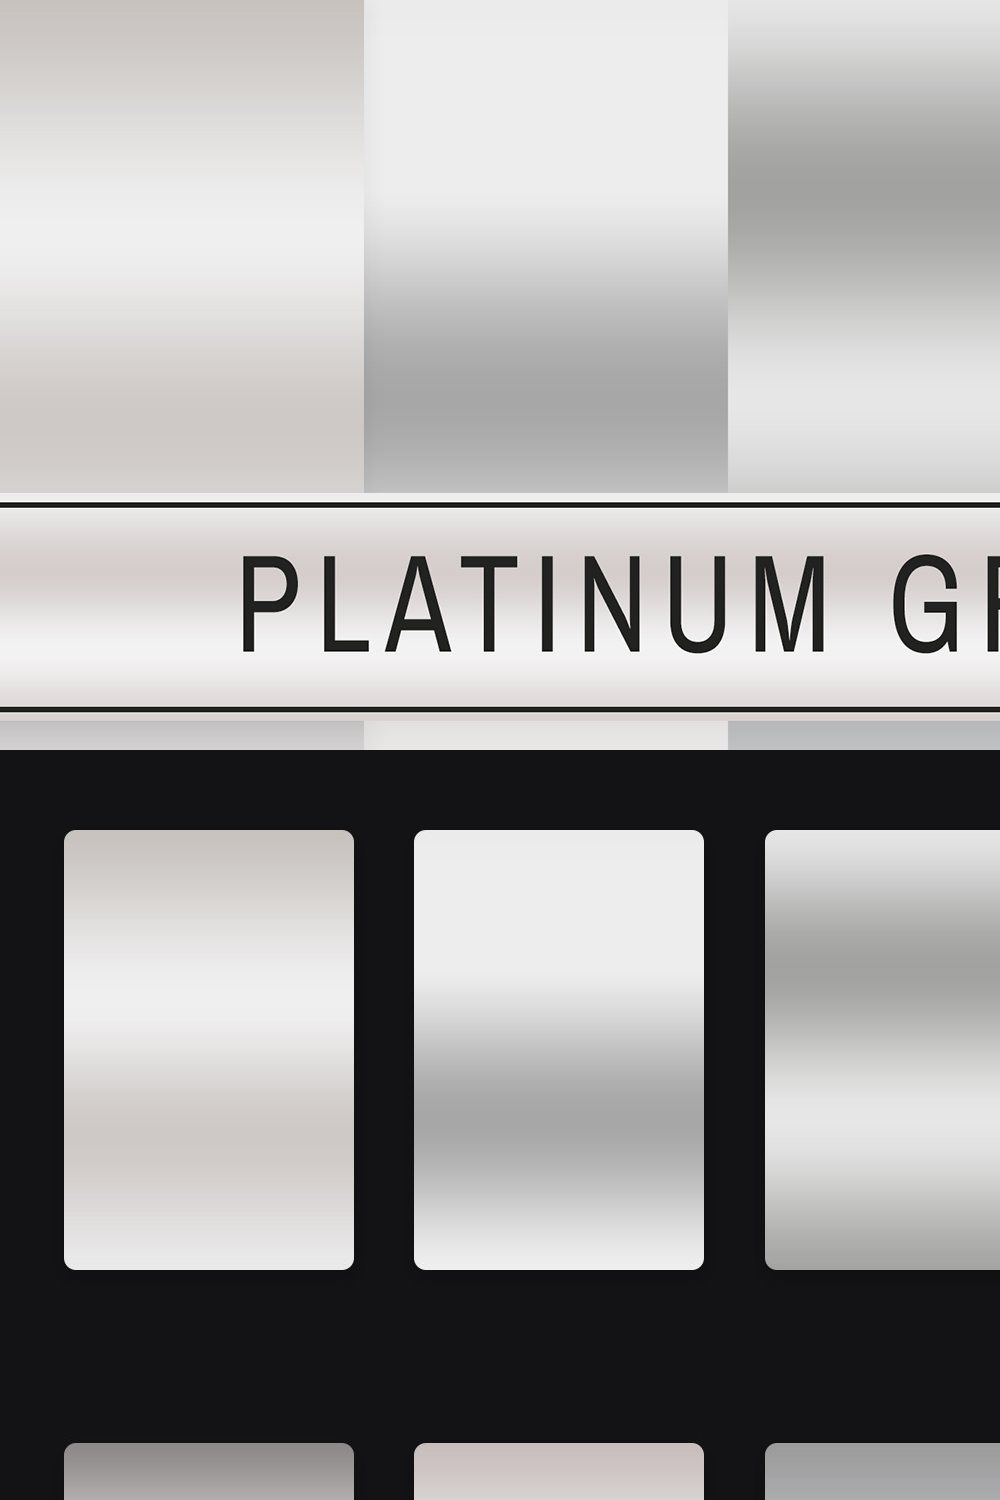 Platinum Gradients pinterest preview image.